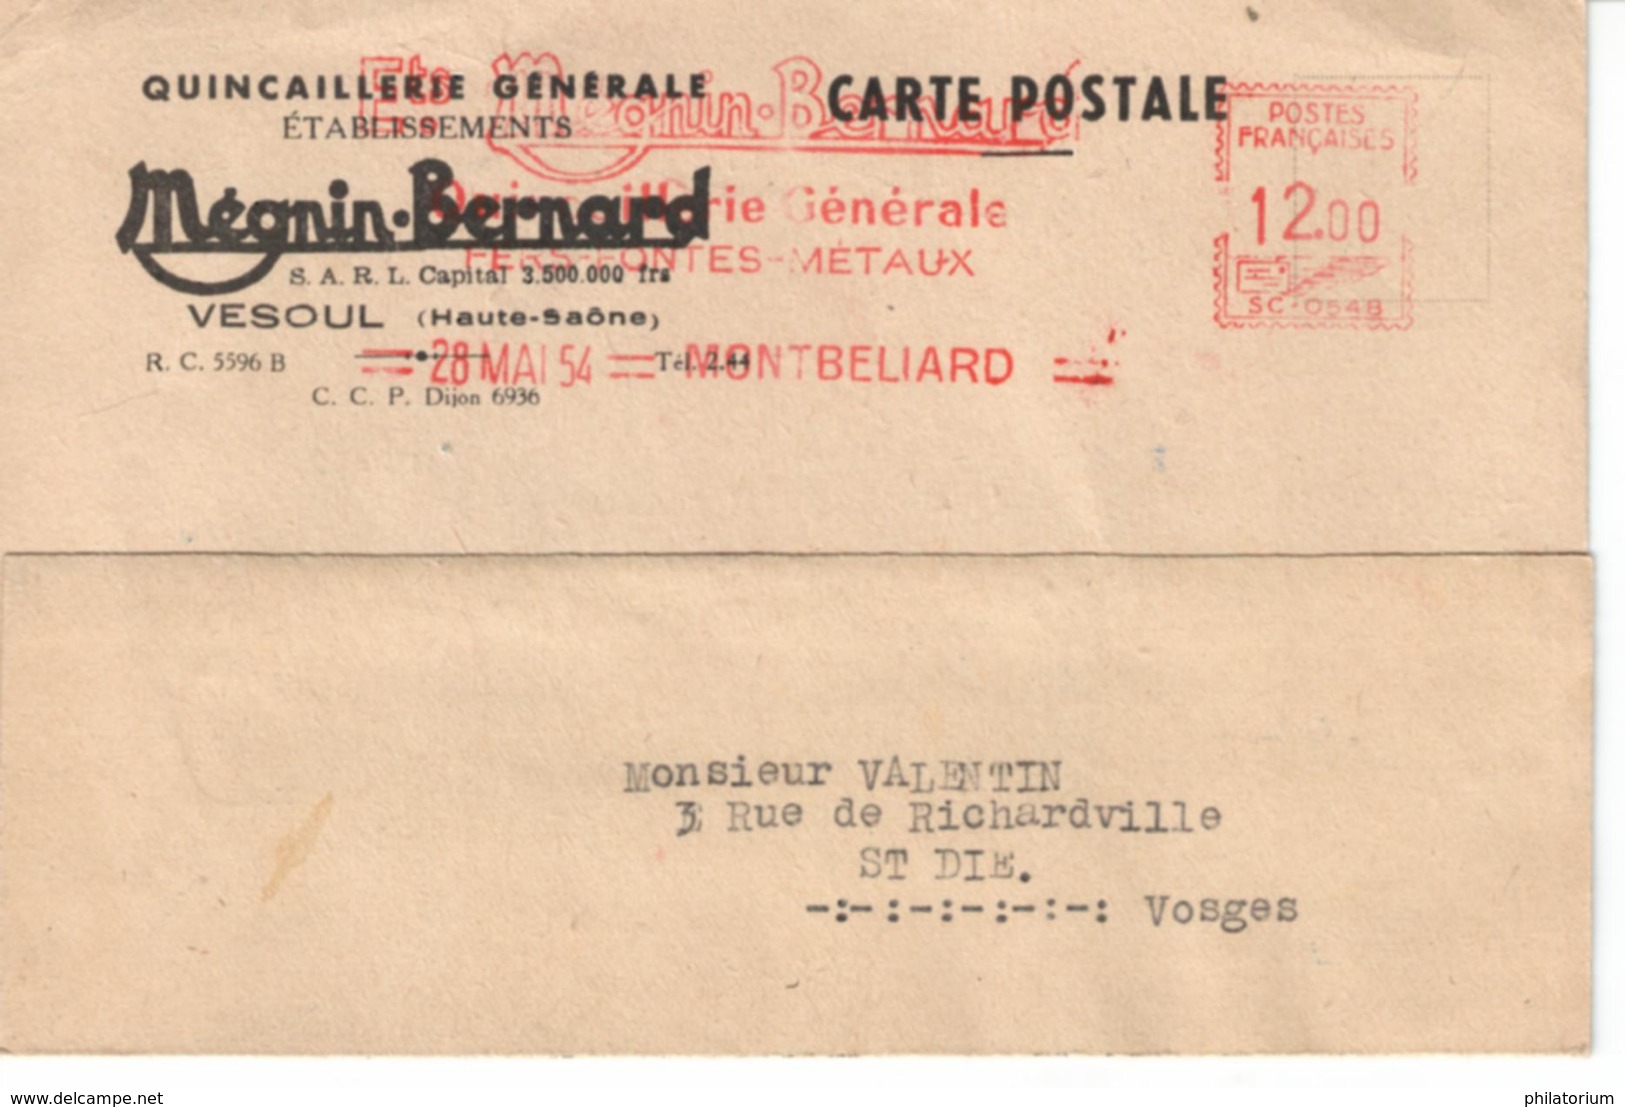 EMA Mégnin Bernard Vesoul Quincaillerie Générale; Montbéliard 28 Mai 1954 Pour Saint Dié - Usines & Industries